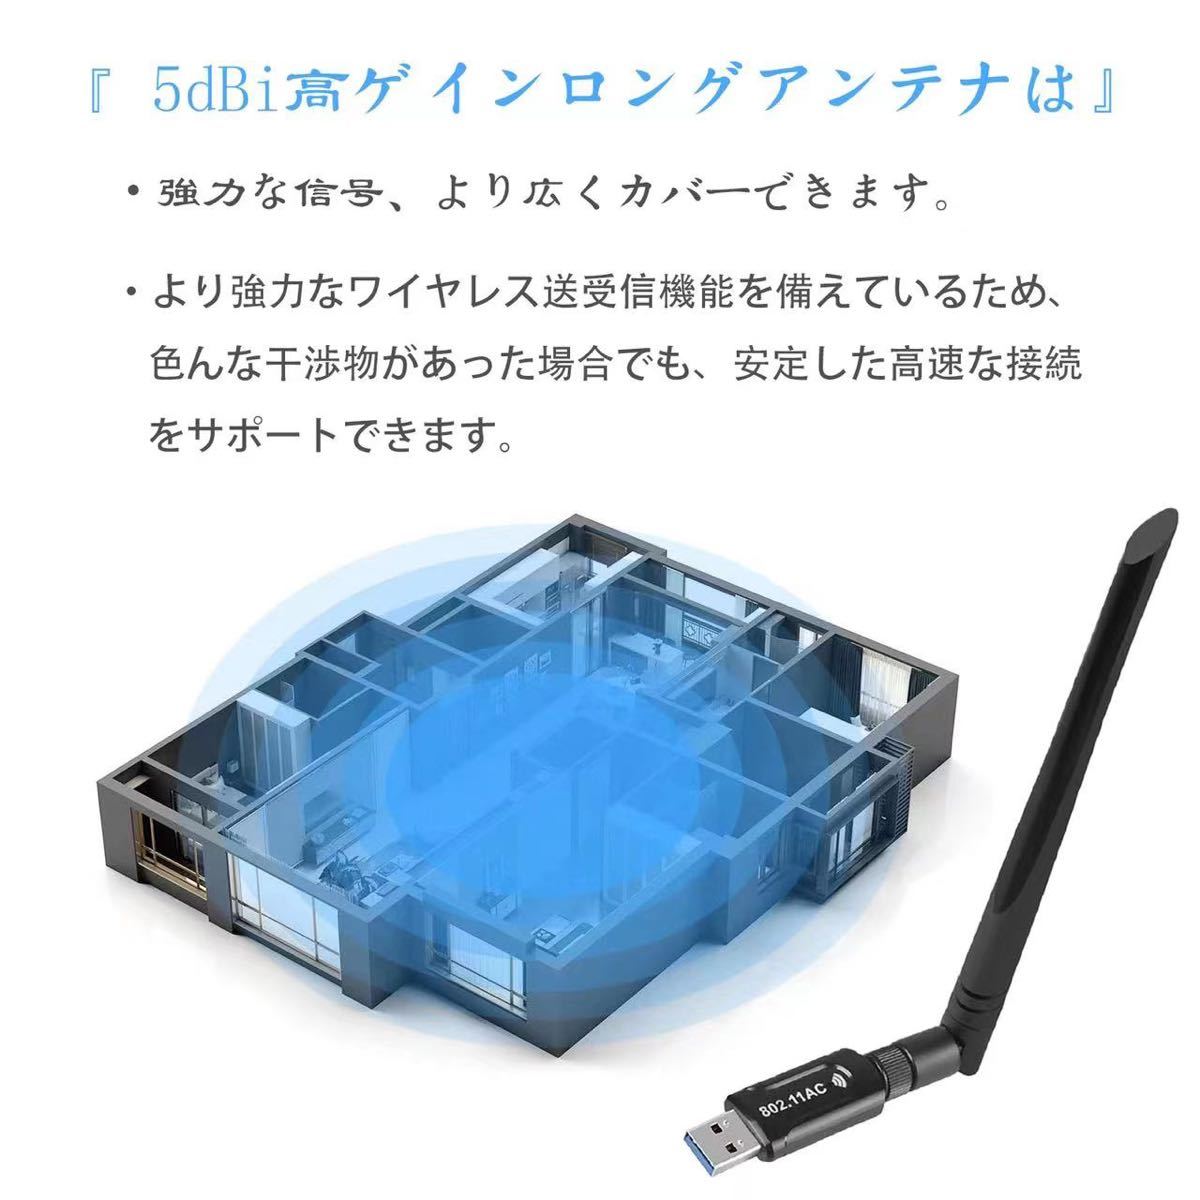 【2022新版】WiFi 無線LAN 子機 1300Mbps USB3.0 WIFIアダプター 5.8G/2.4Gデュアルバンド5dBi高速通信13個放熱穴 WPS暗号化